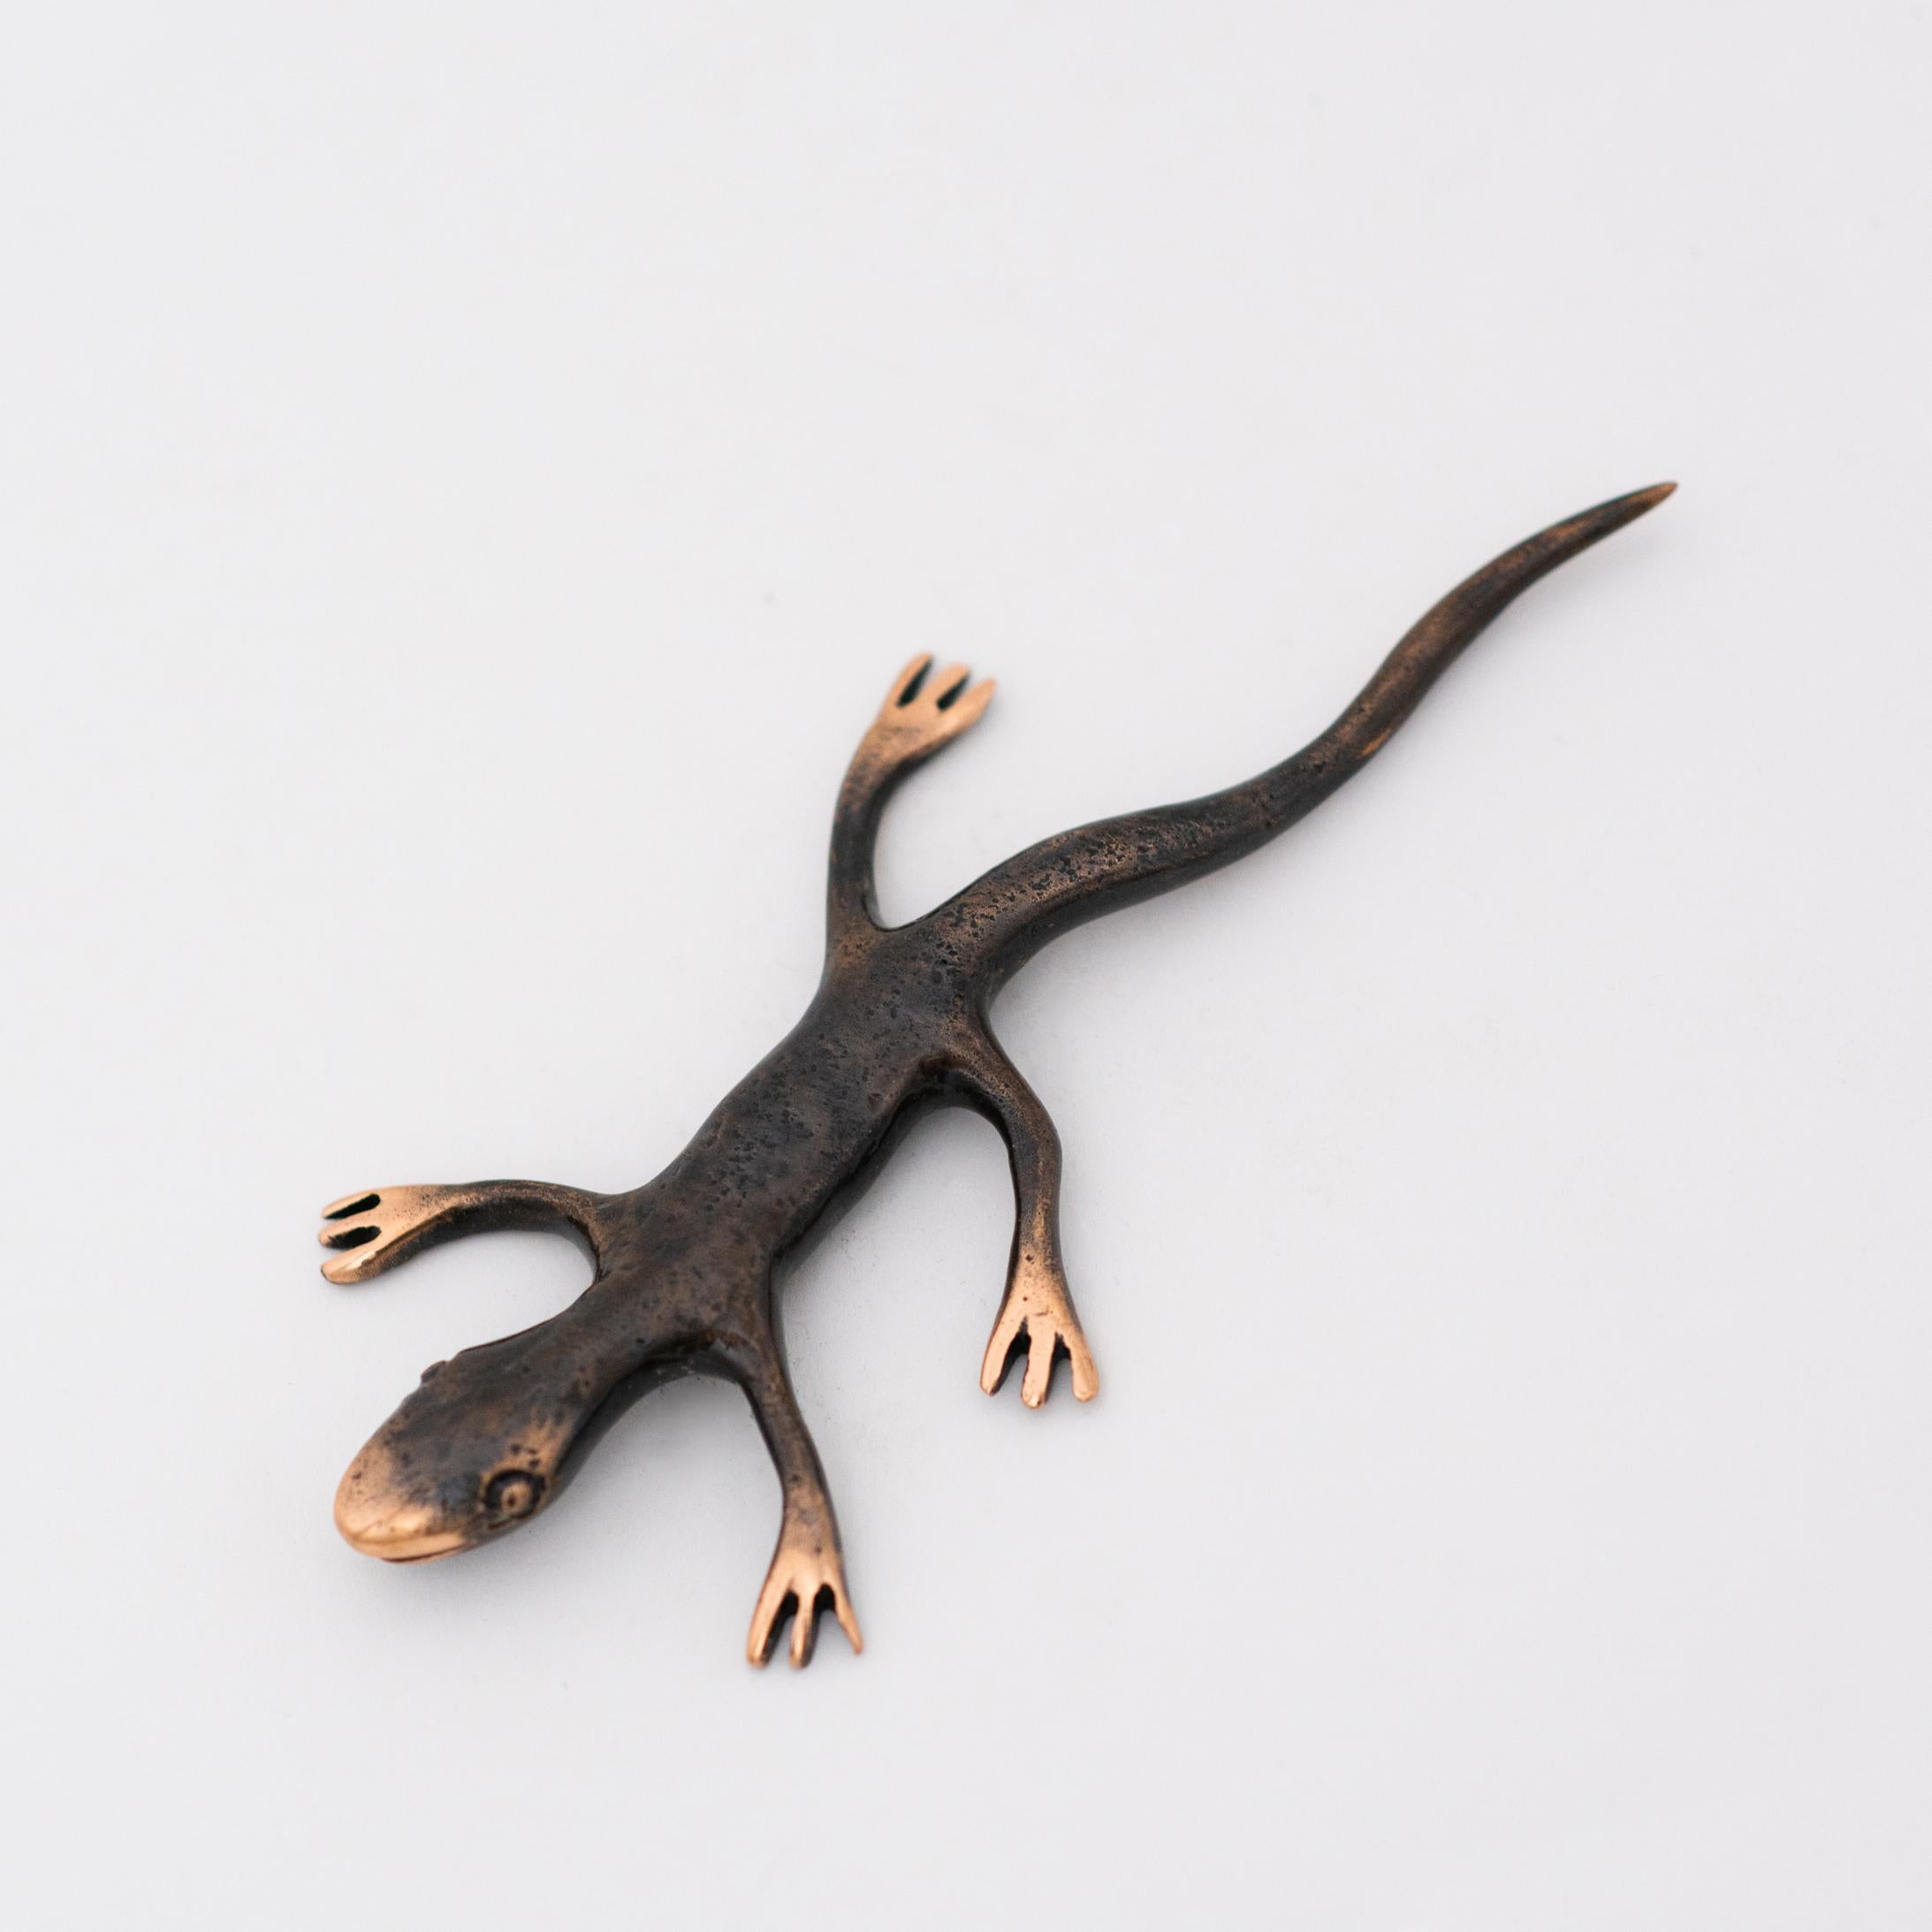 Schöner handgegossener patinierter Gecko-Briefbeschwerer aus Bronze. Die polierten Details an den Füßen des Geckos heben die charakteristische roségoldene Farbe der Bronze hervor.

Jeder dieser Geckos wird einzeln mit unglaublichen Details